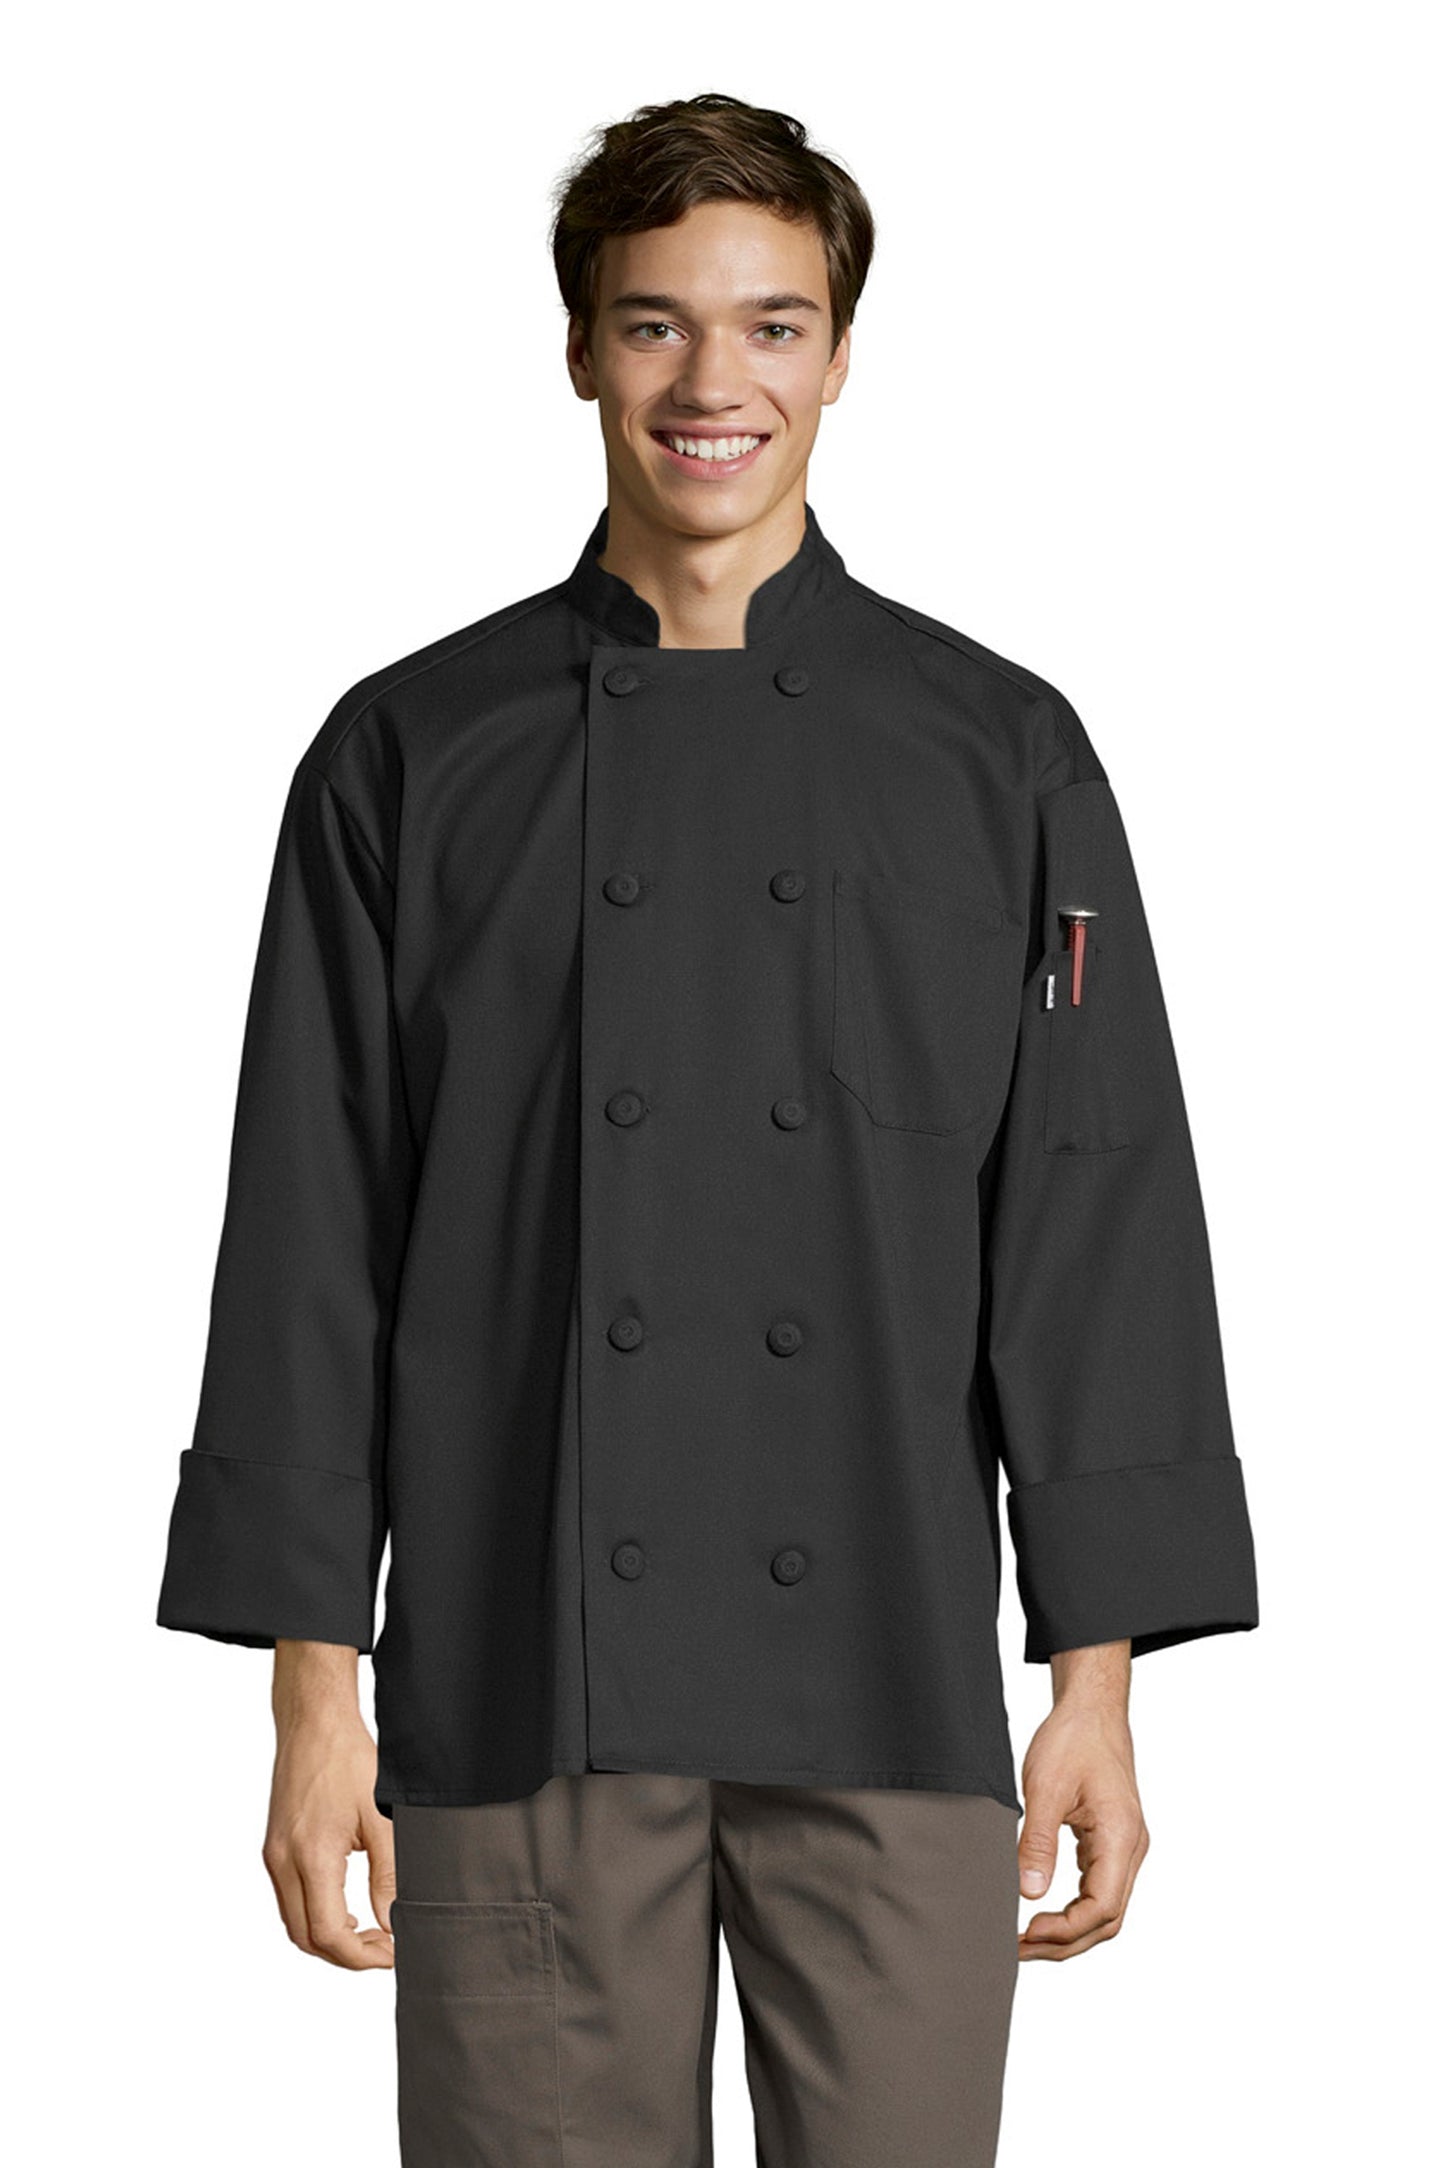 La Paz Chef Coat #0496 *Closeout* (All Sales Final No Returns)